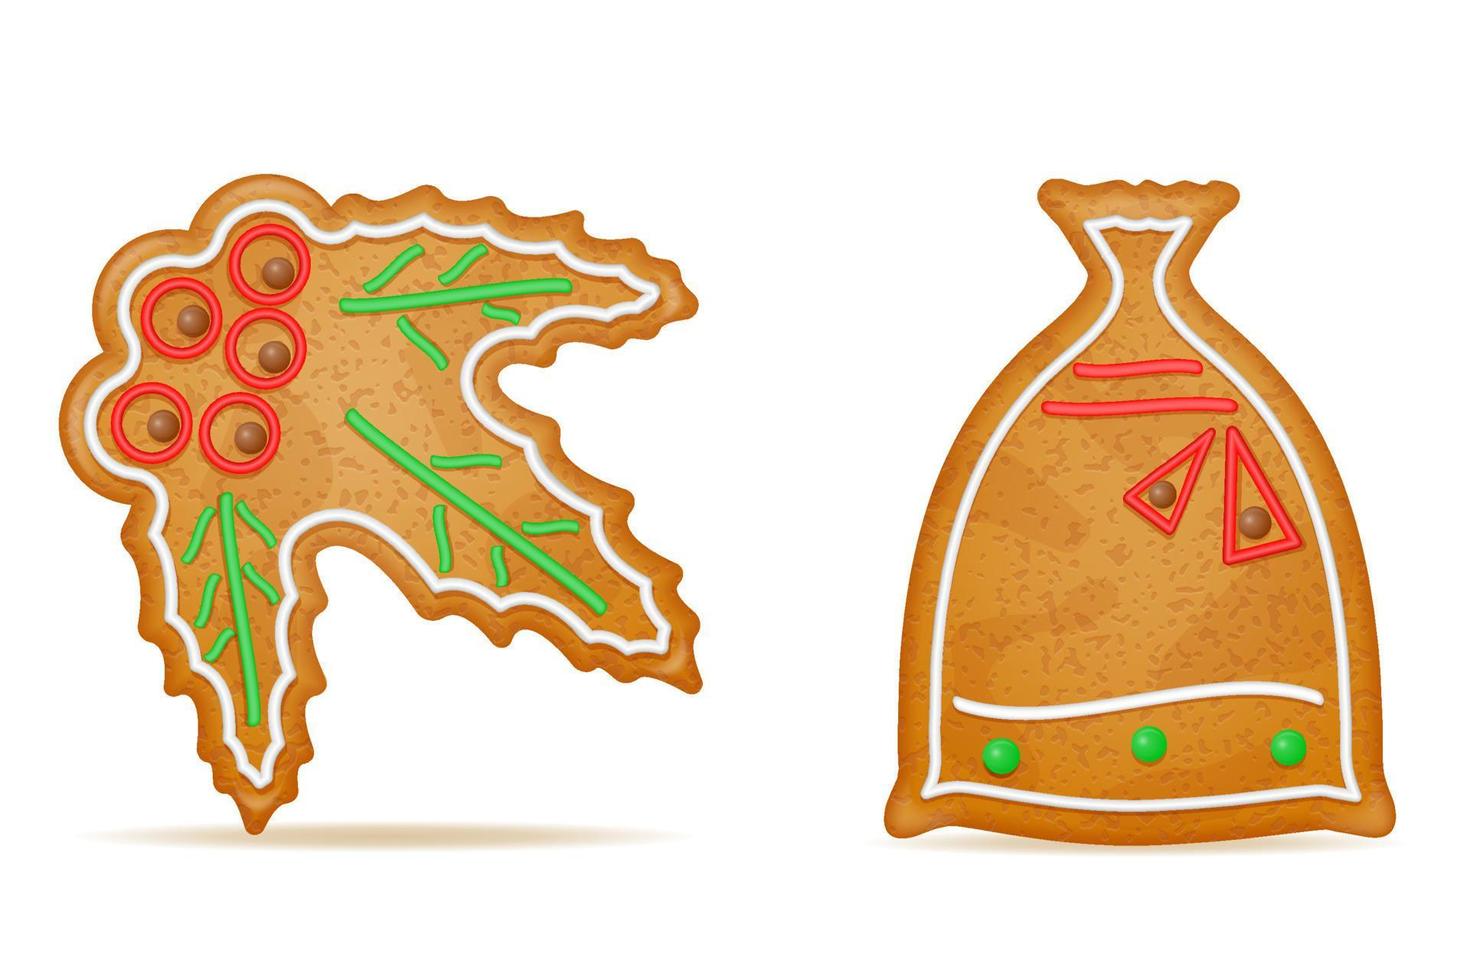 biscuits de pain d'épice de noël pour l'illustration vectorielle de célébration des vacances du nouvel an isolé sur fond blanc vecteur